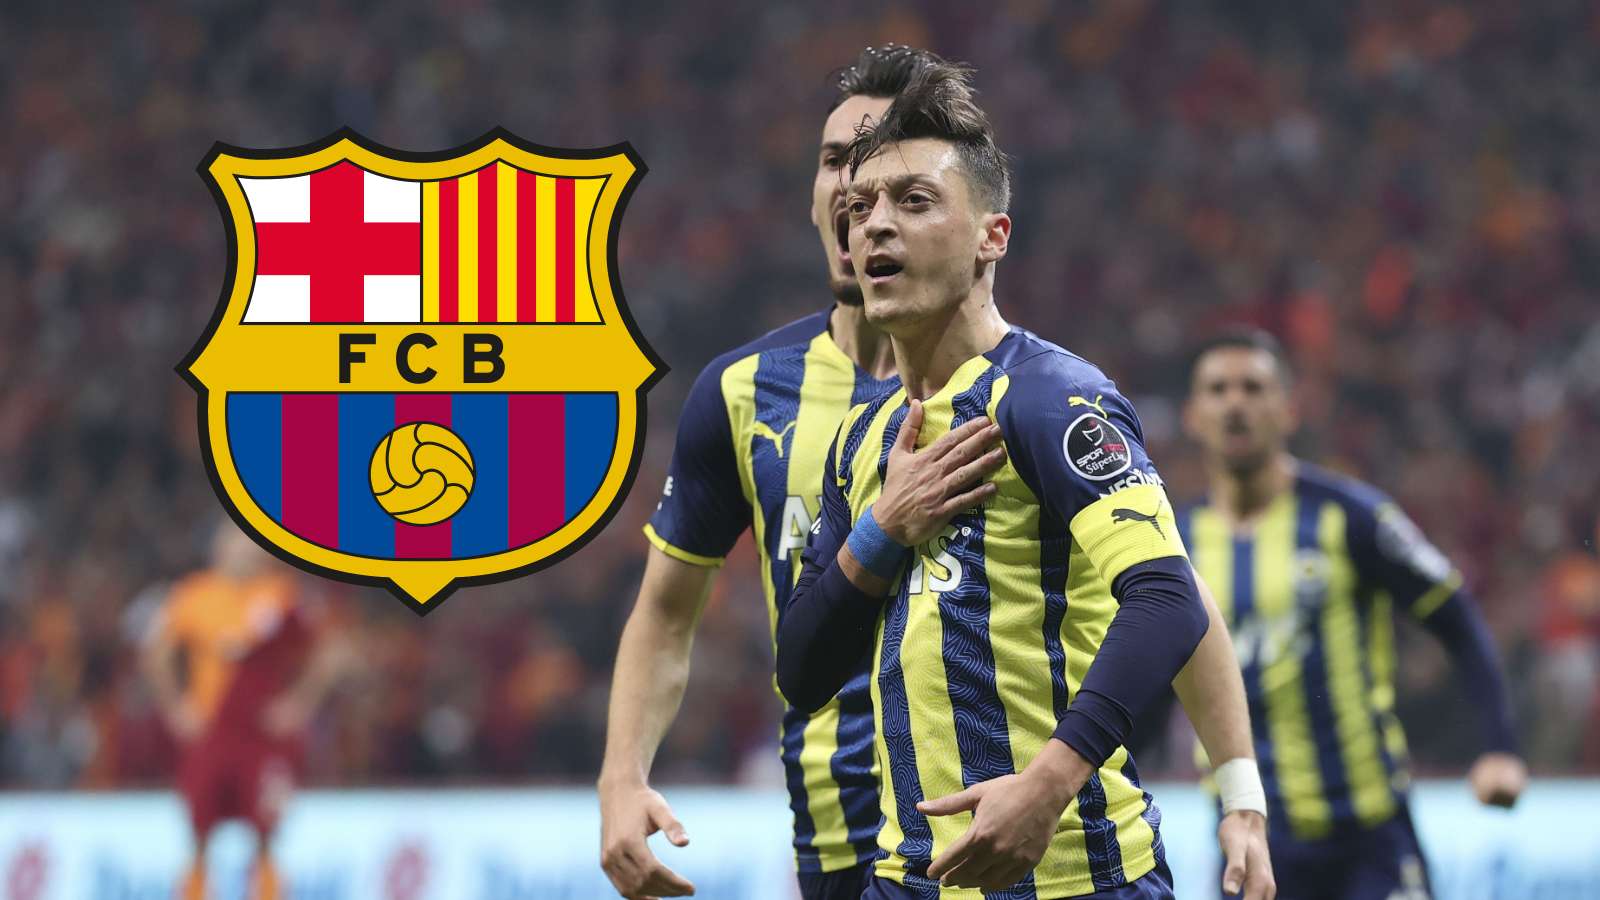 Mesut Ozil. Galatasaray vs Fenerbahce. 11.21.2021